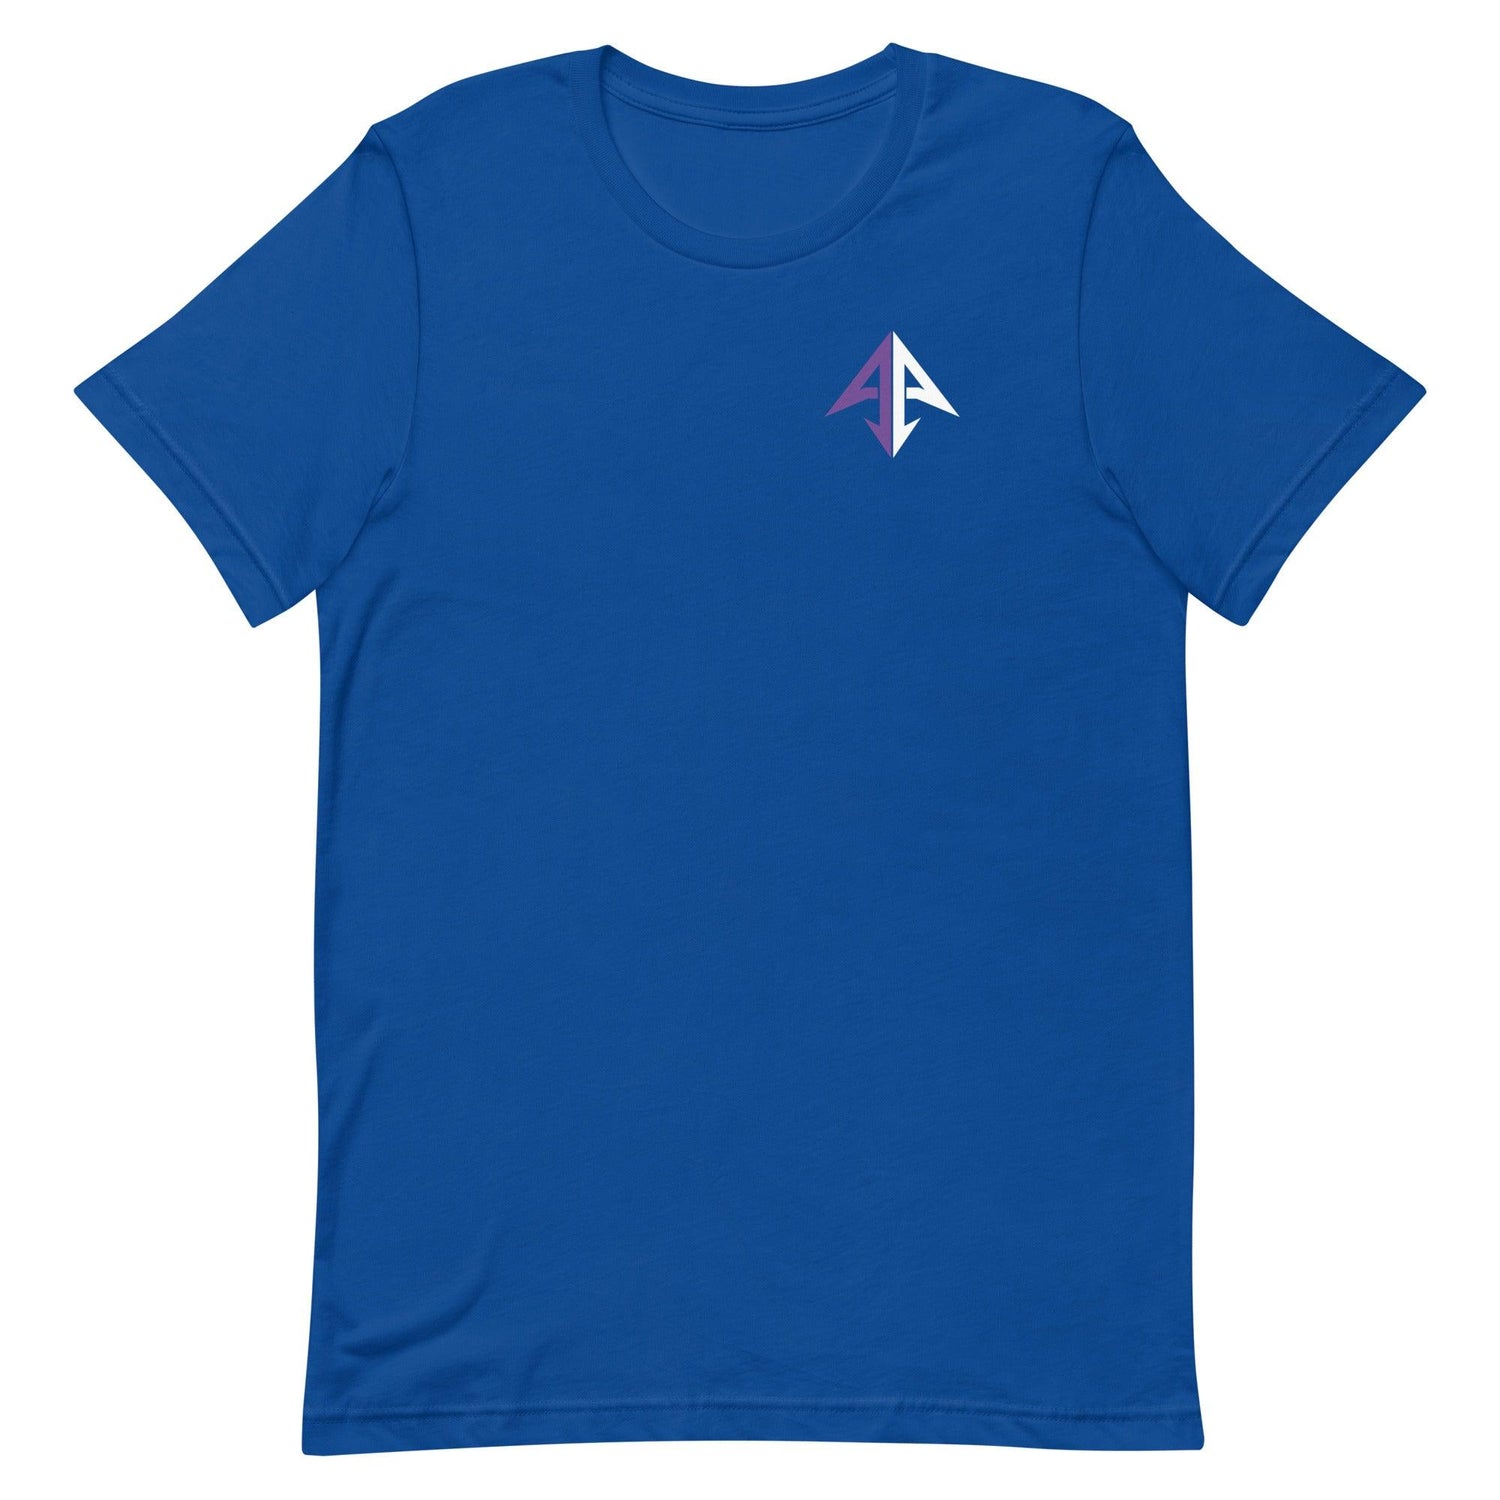 Alan Ali "Essential" t-shirt - Fan Arch